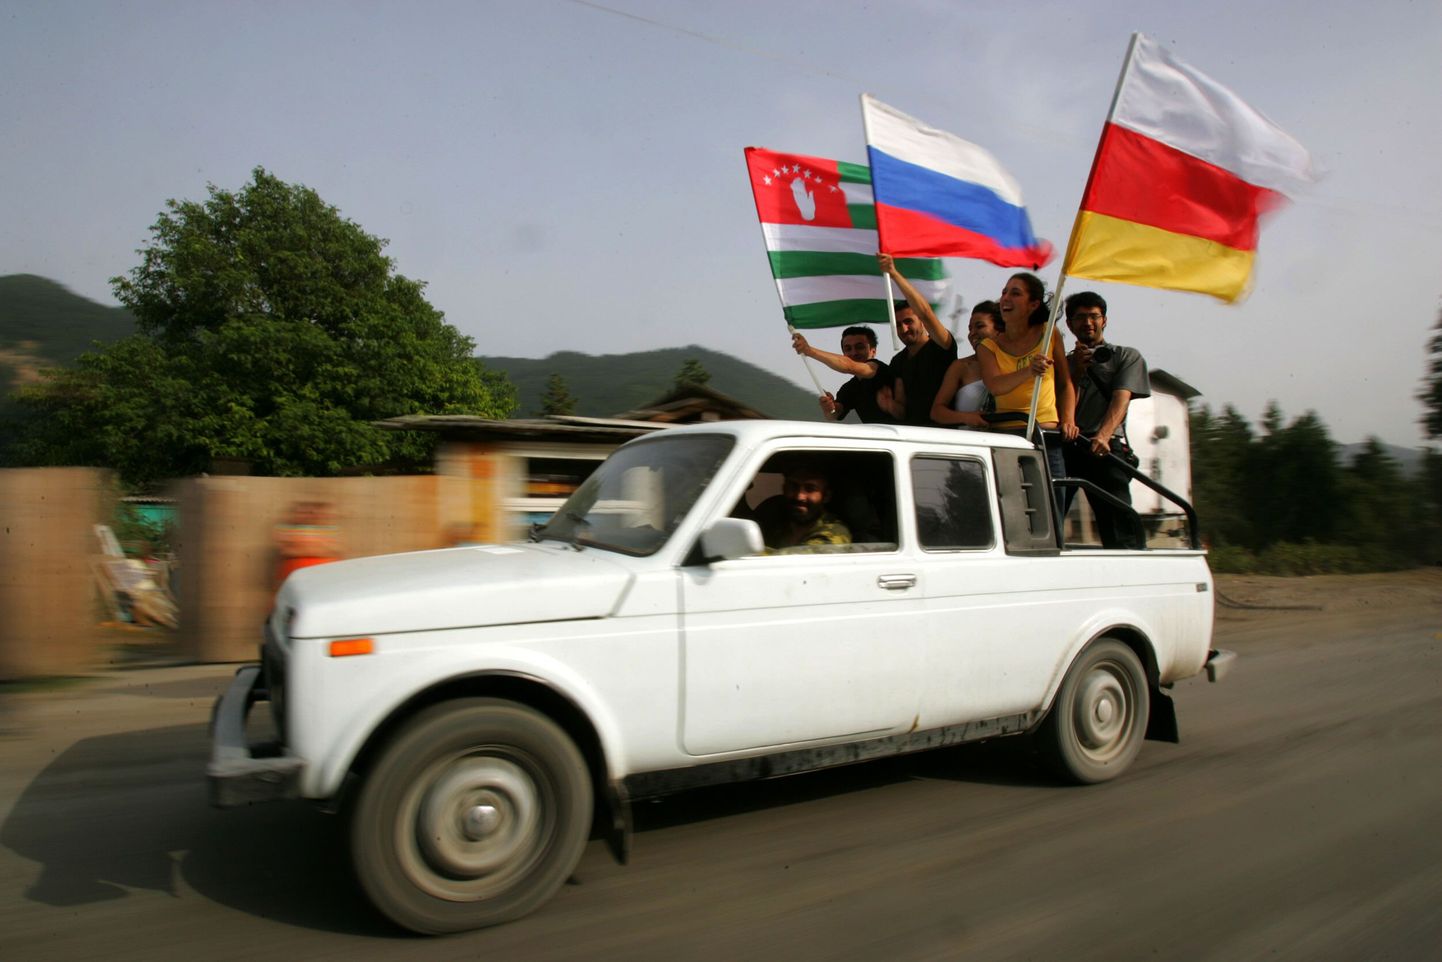 Venemaa otsus tunnustada Lõuna-Osseetiat ja Abhaasiat iseseisvate vabariikidena tõi inimesed tänavatele pidutsema. Pildil Venemaa trikoloor Abhaasia ja Lõuna-Osseetia rahvuslippude keskel.